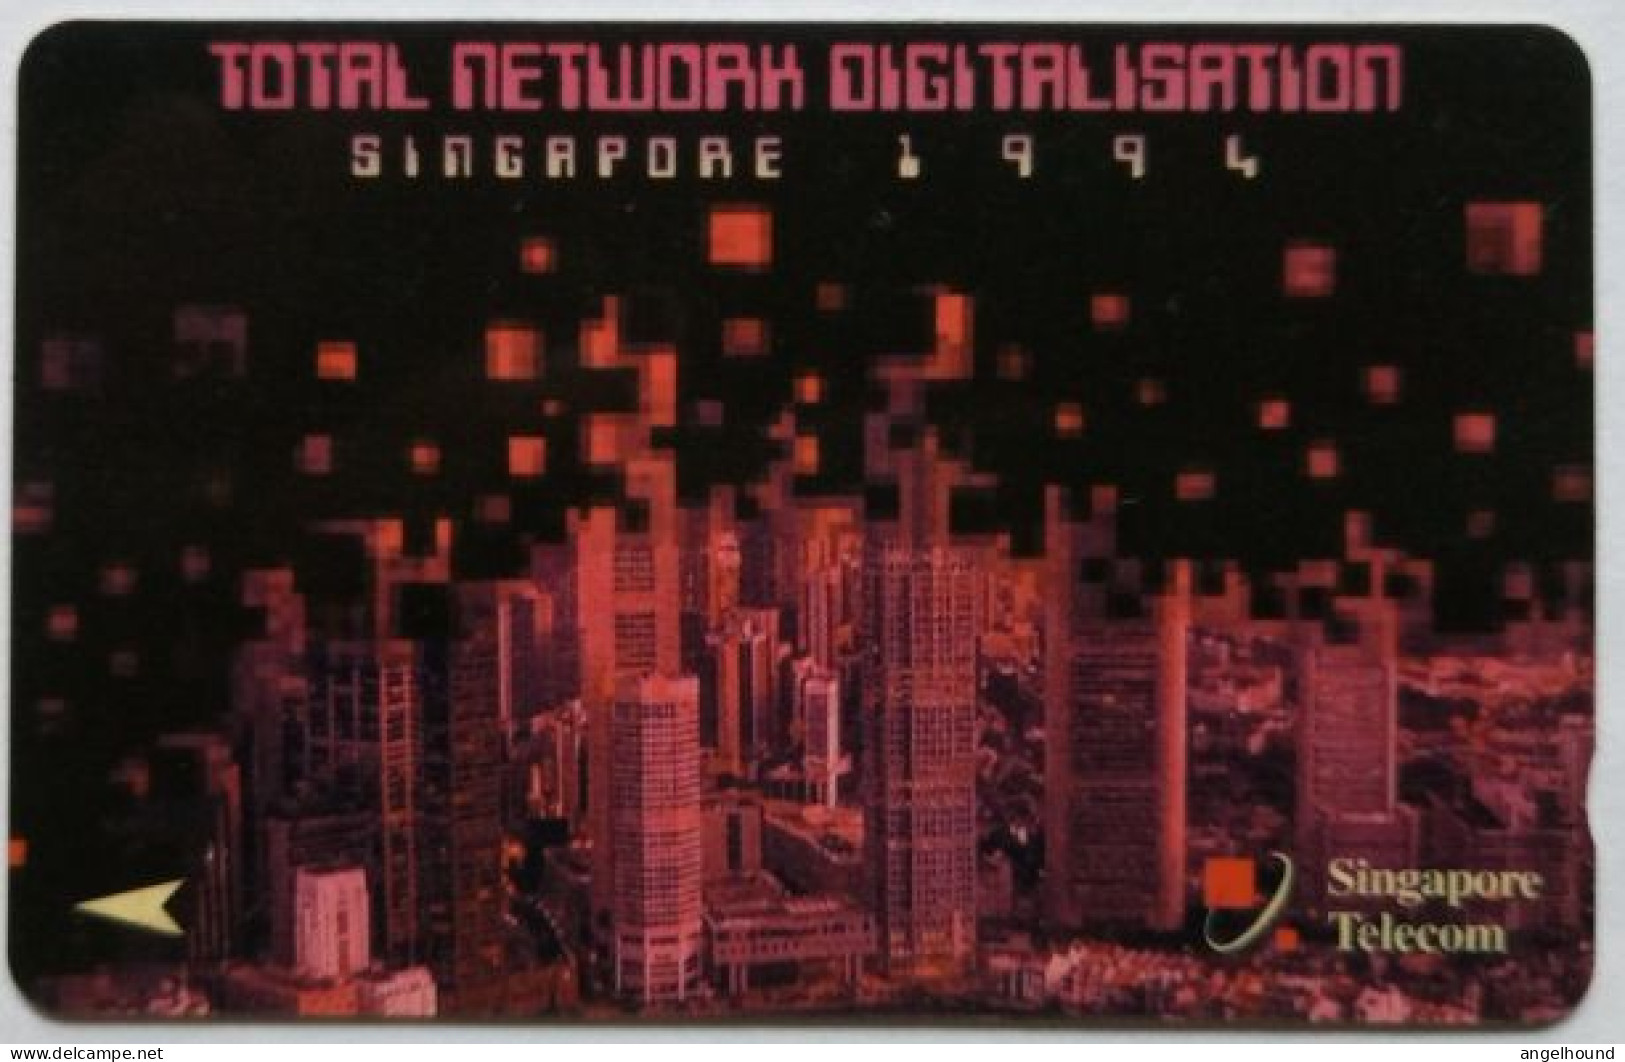 Singapore  $3  GPT  1SNDB - Total Network Digitalisation Singfapore 1994 - Singapour